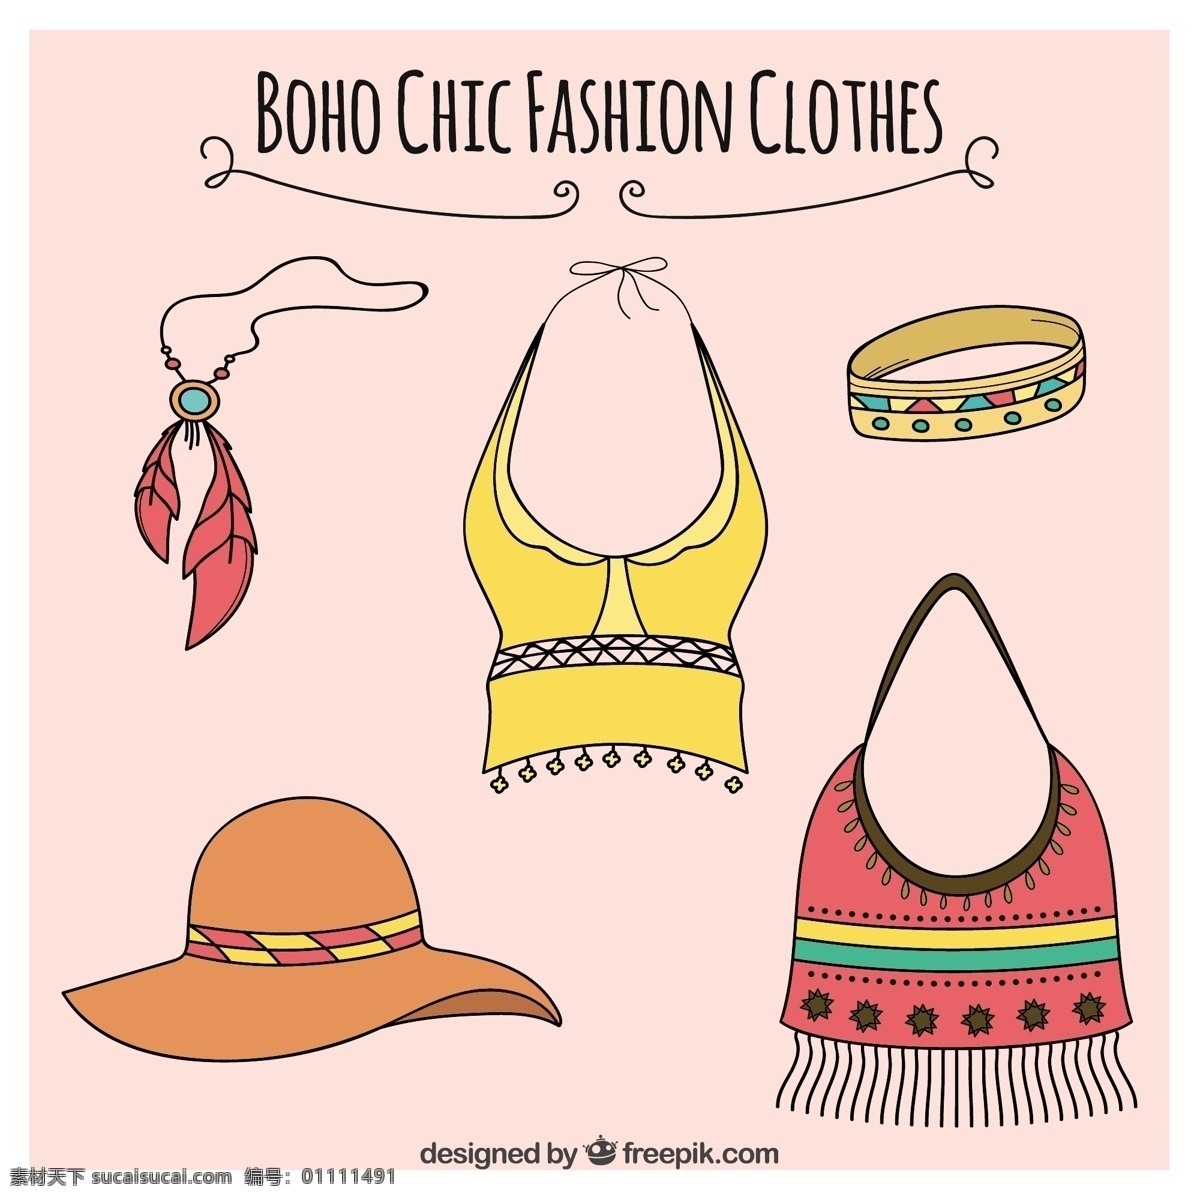 波希米亚 风格 衣服 配件 包 手 时尚 手拉 衬衫 袋子 羽毛 帽子 部落 印度 绘画 装饰 民族 款式 包装 绘制 本地 白色